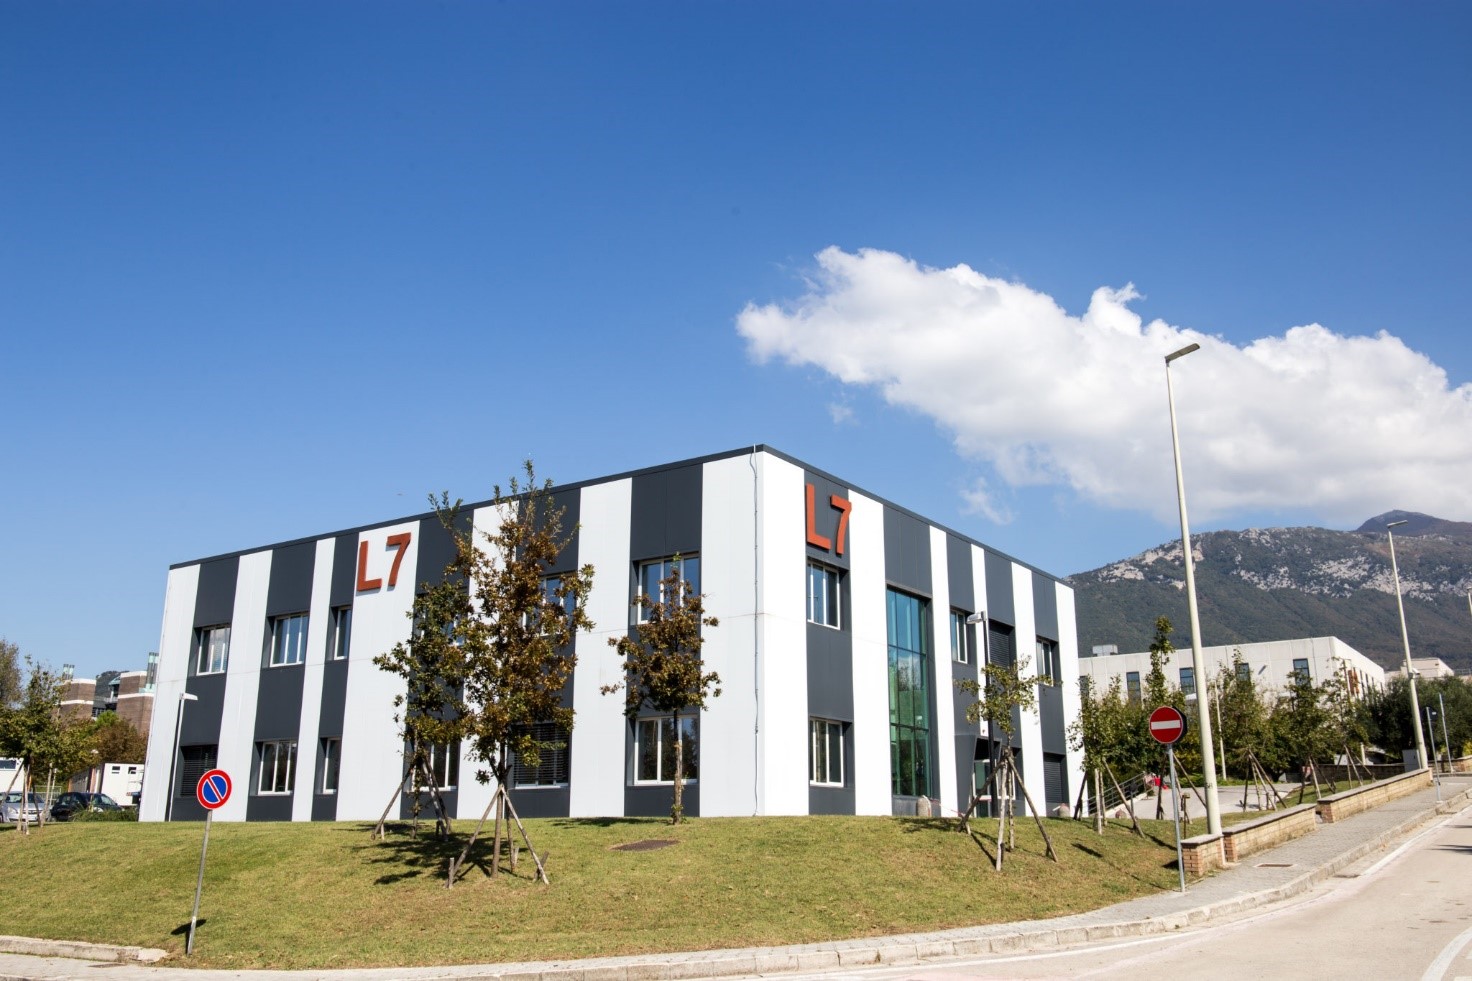 La nuova sede ePowerIng nel Campus dell’Università di Salerno